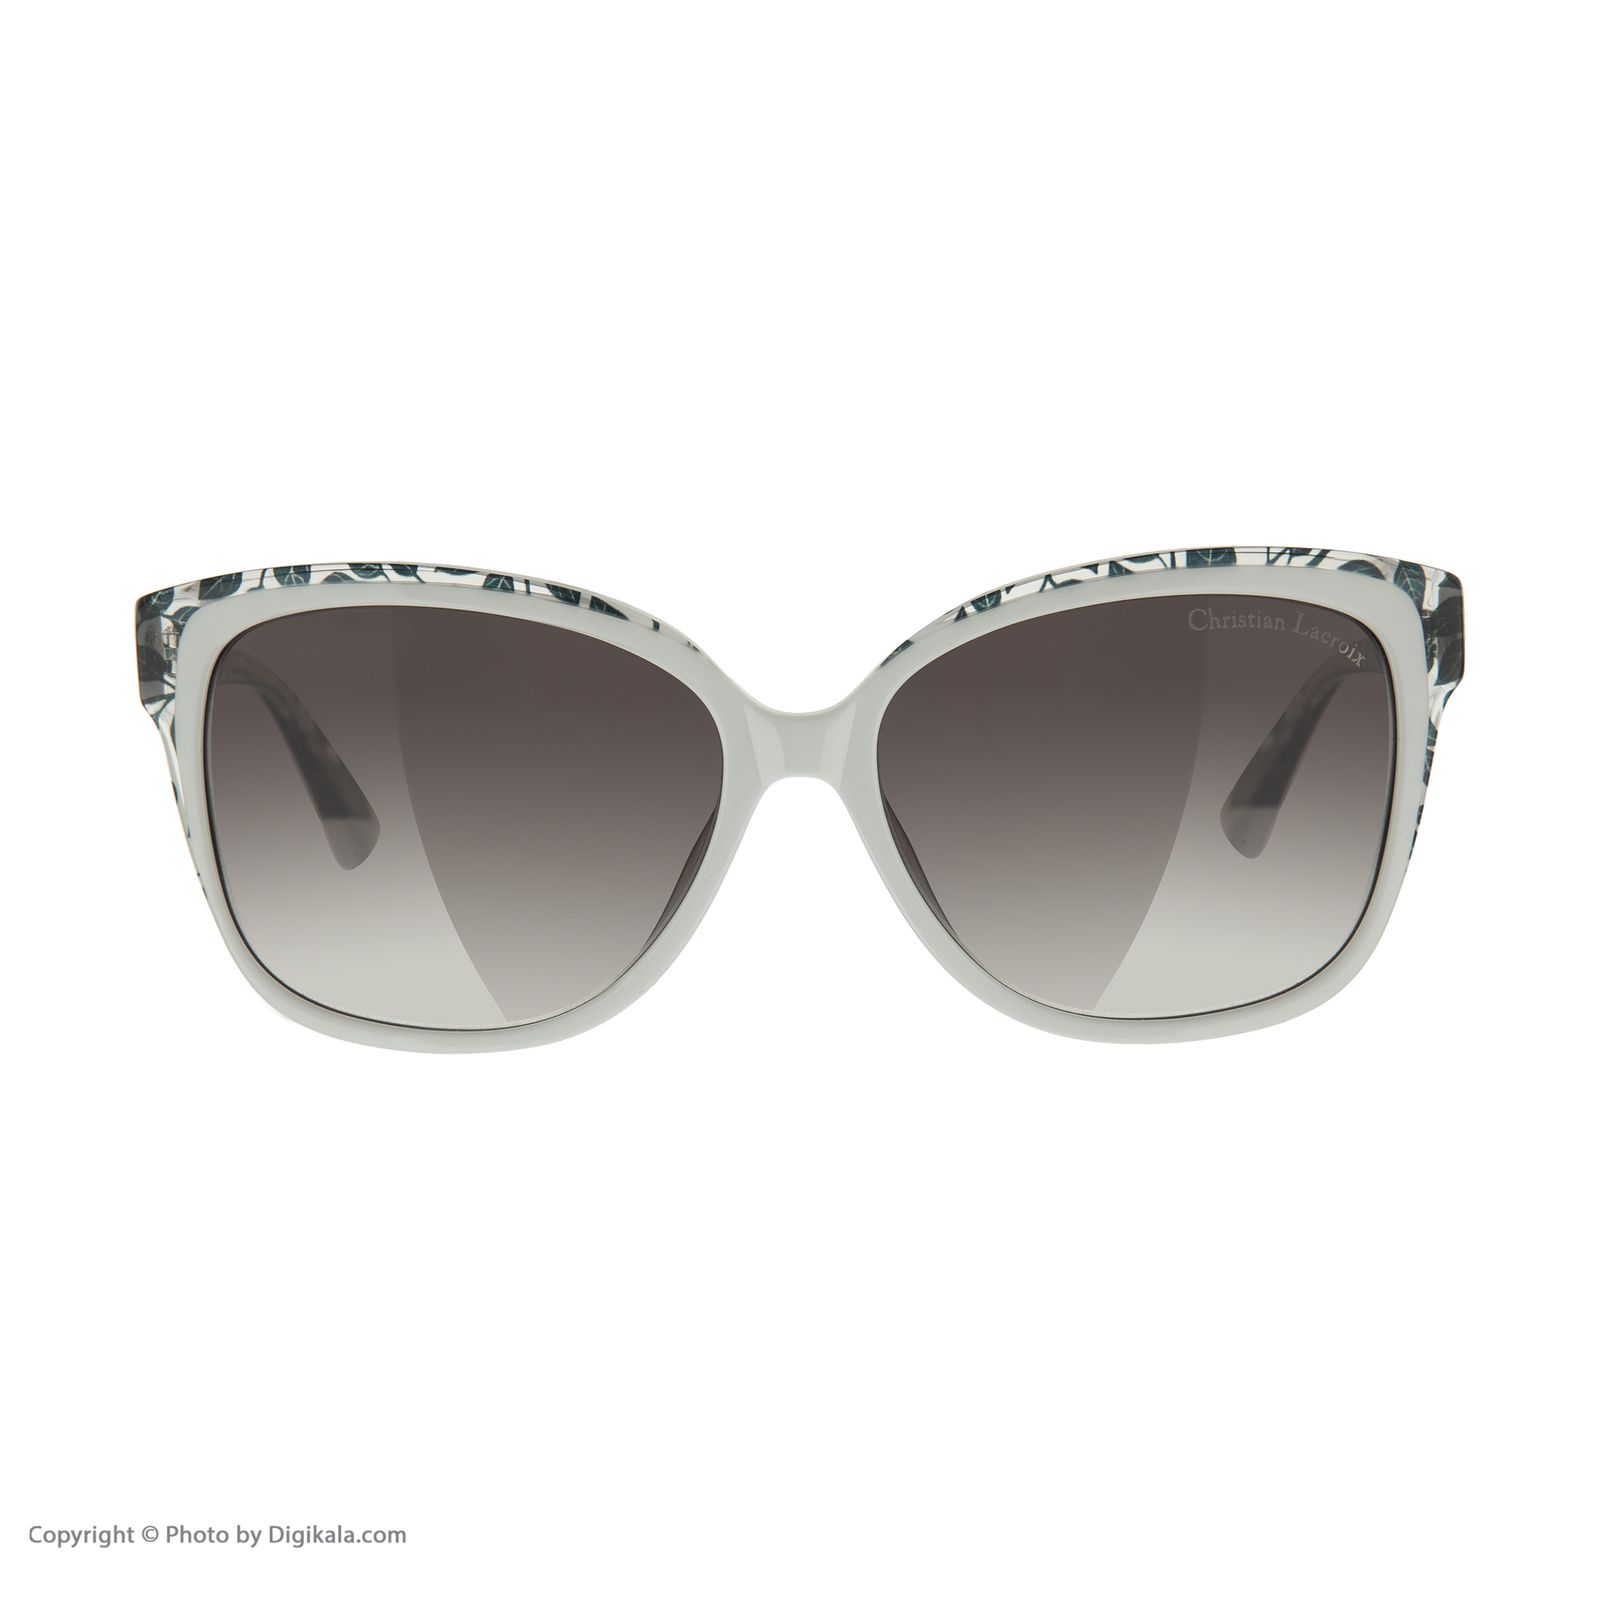 عینک آفتابی زنانه کریستین لاکروآ مدل CL 5079 888 -  - 2